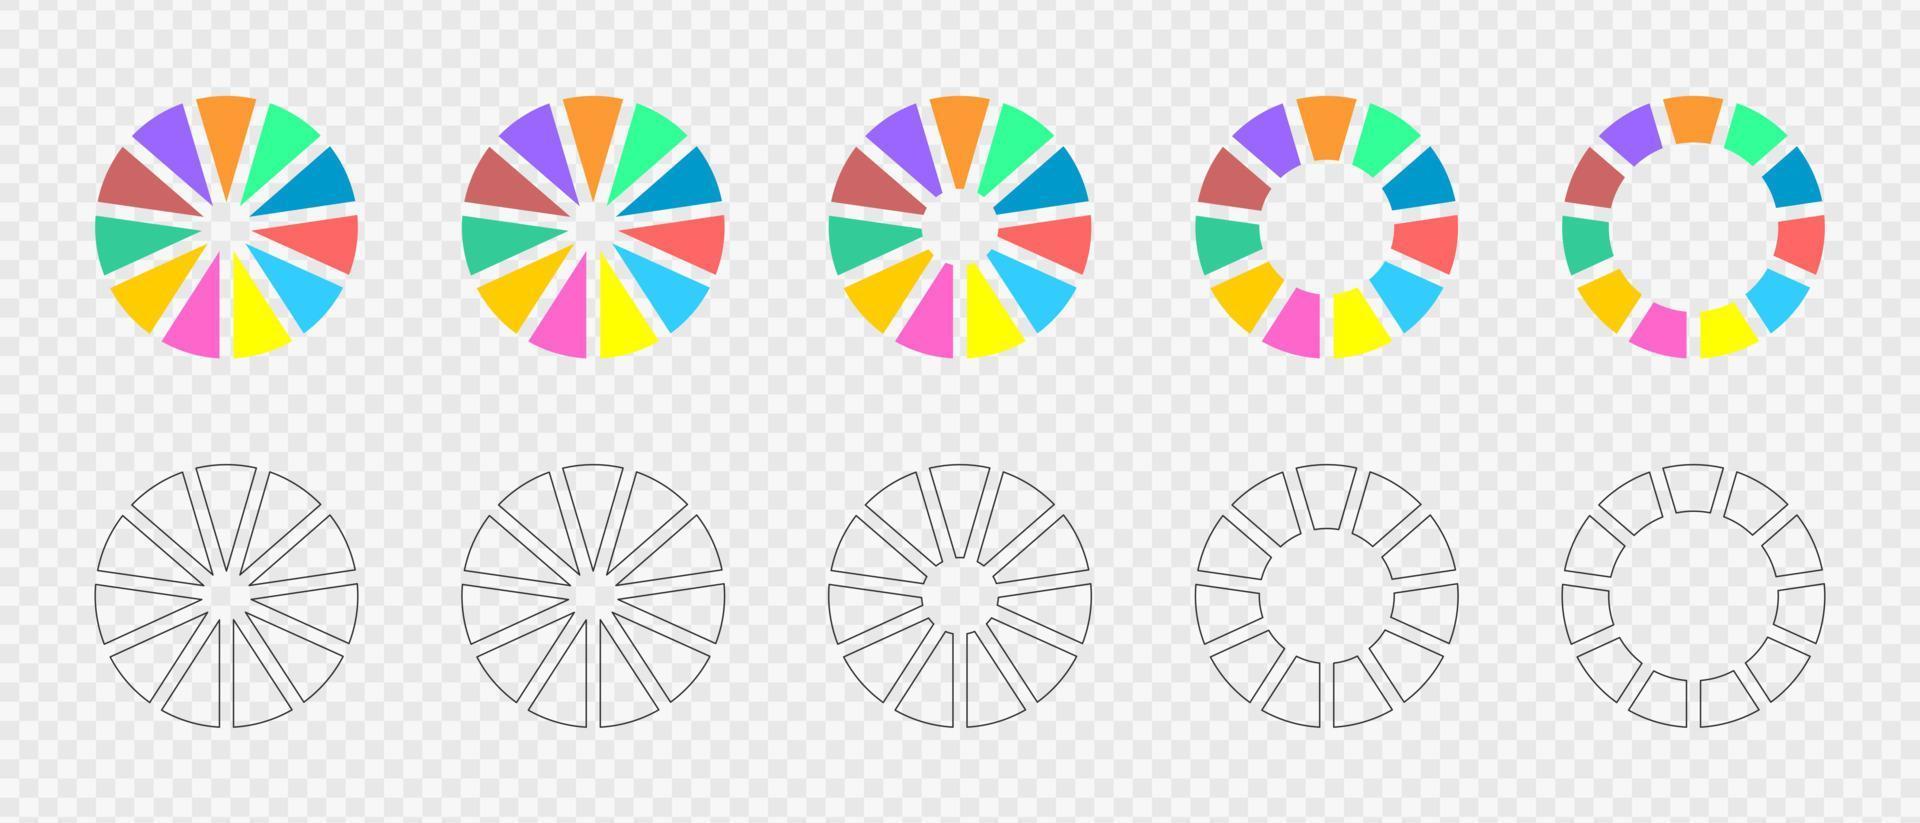 munk diagram uppsättning. infographic hjul dividerat i 11 flerfärgad och grafisk sektioner. cirkel diagram eller läser in barer. runda former skära i elva likvärdig delar. vektor platt och översikt illustration